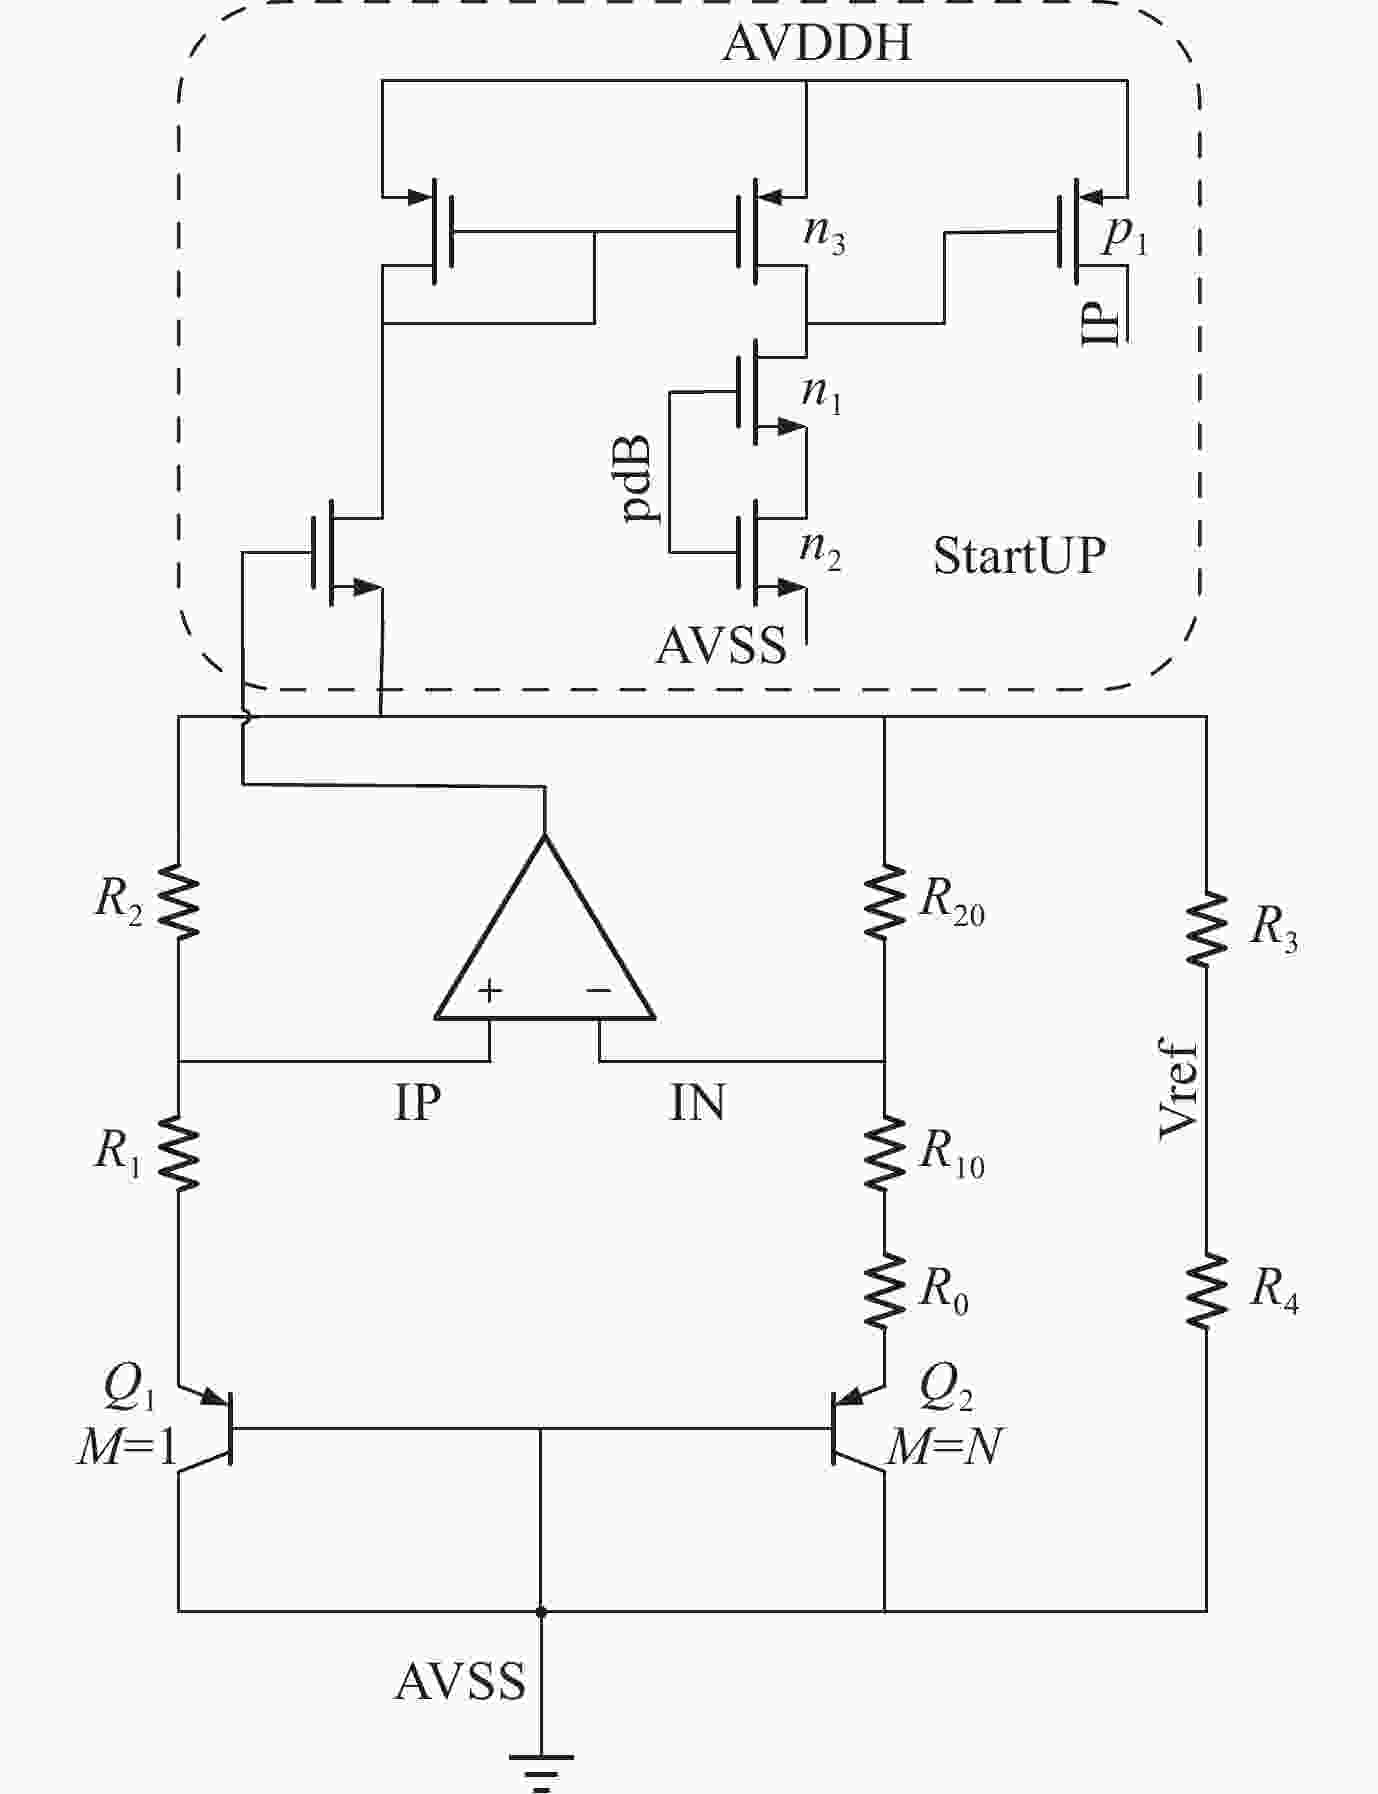 Handling Crosstalk in High-Speed PCB Design | Sierra Circuits